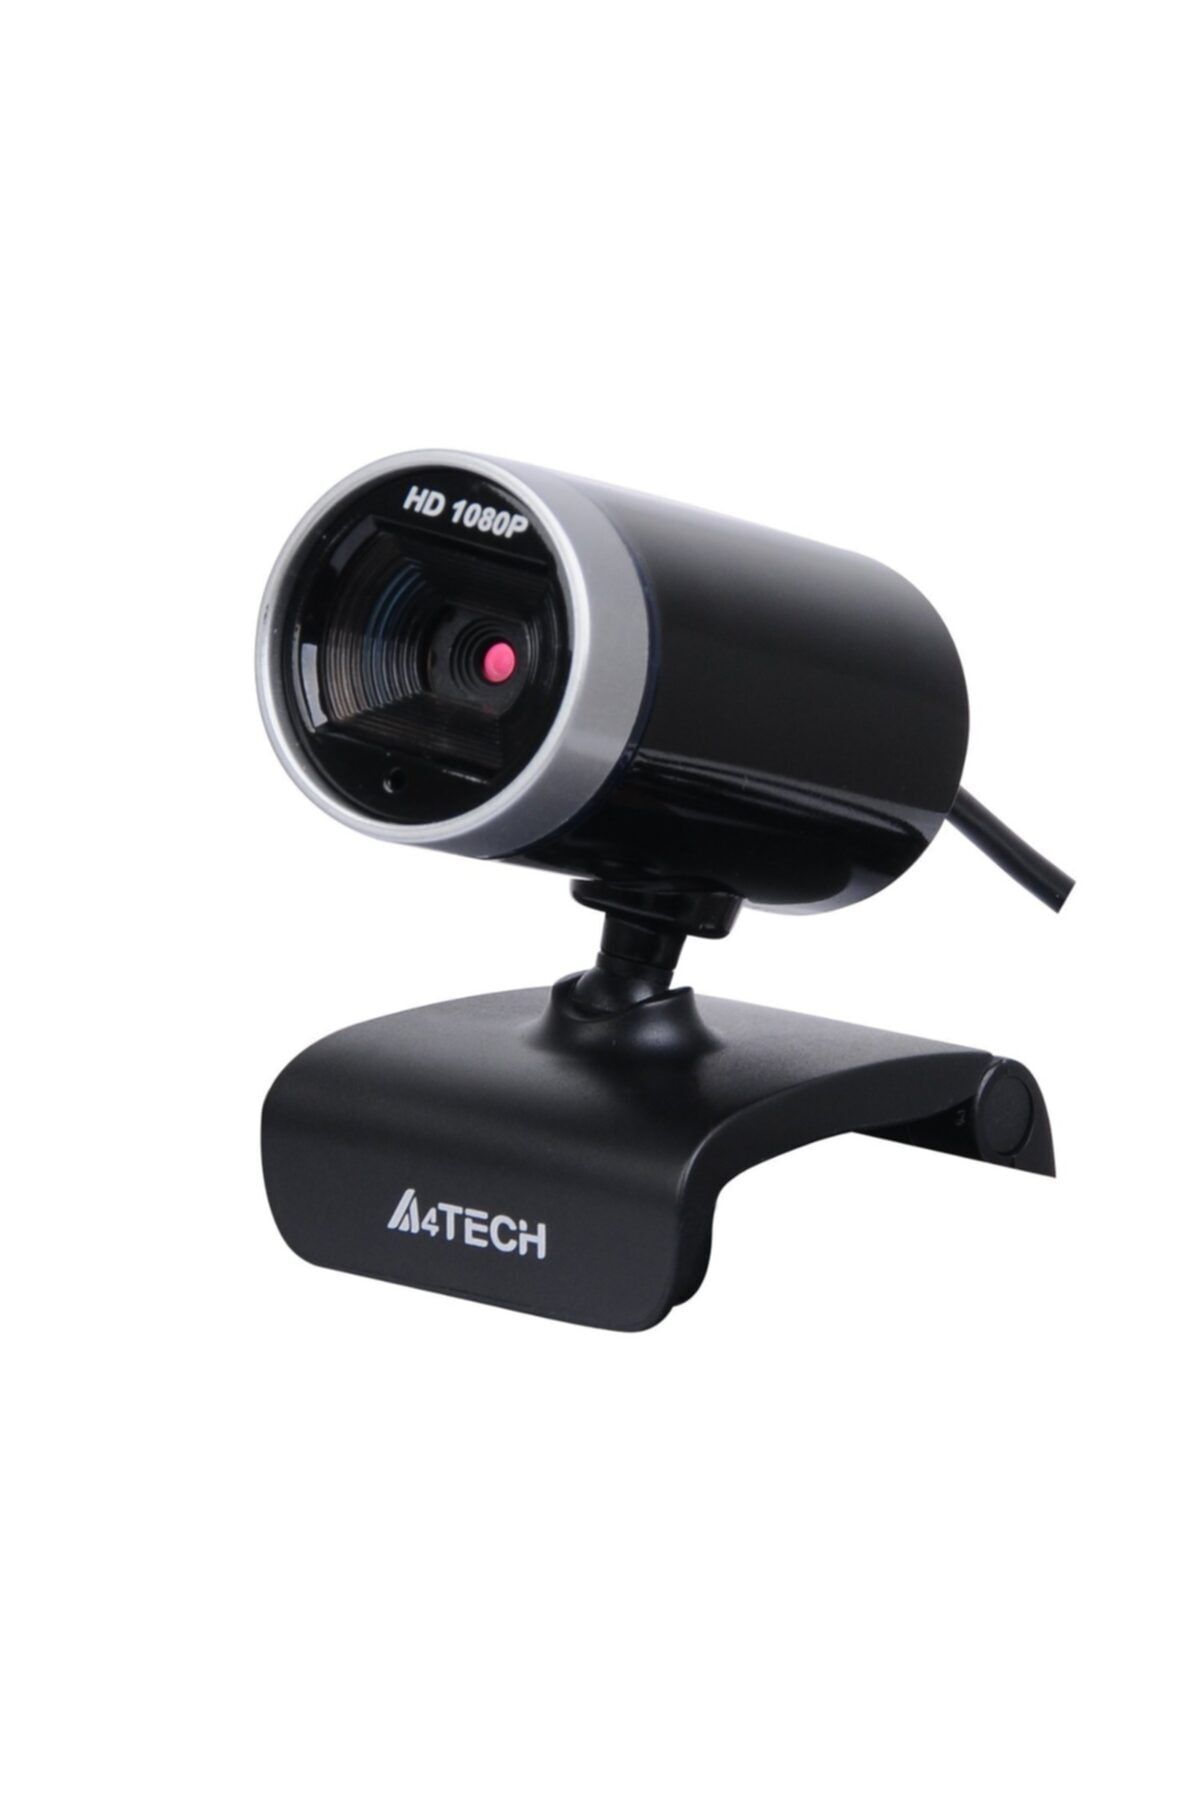 A4 Tech Pk-910h Full Hd 16mp Mıkrofonlu Webcam